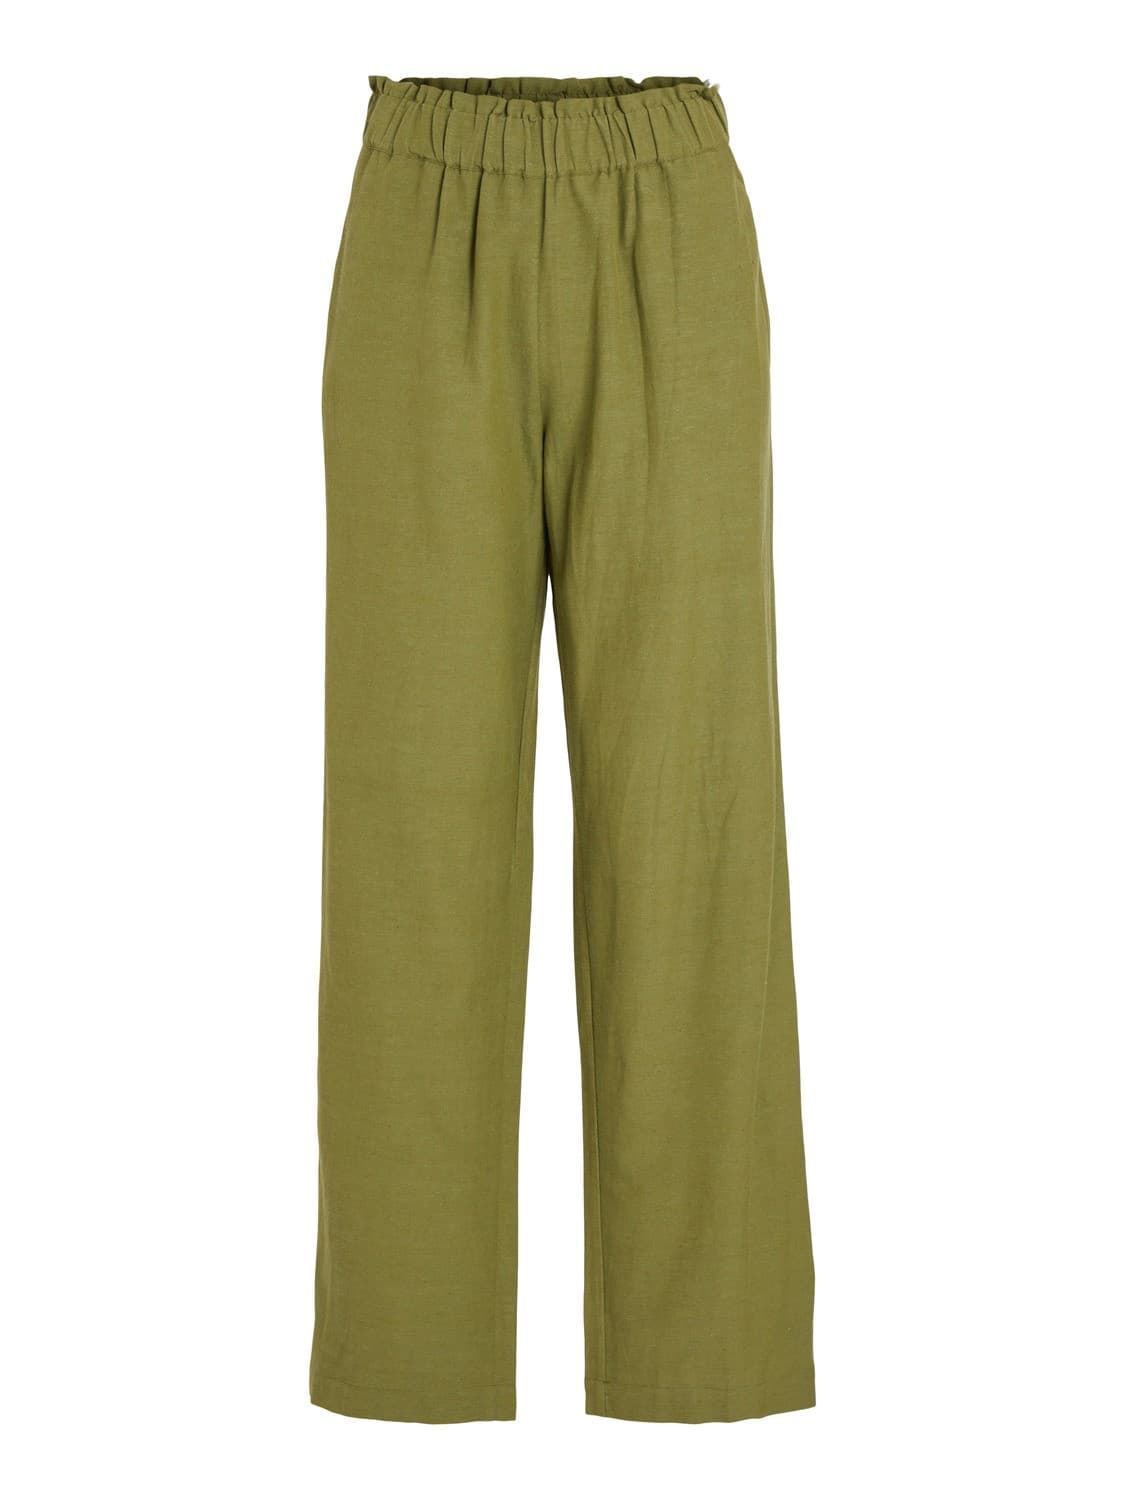 Pantalón viprisilla verde - Imagen 1